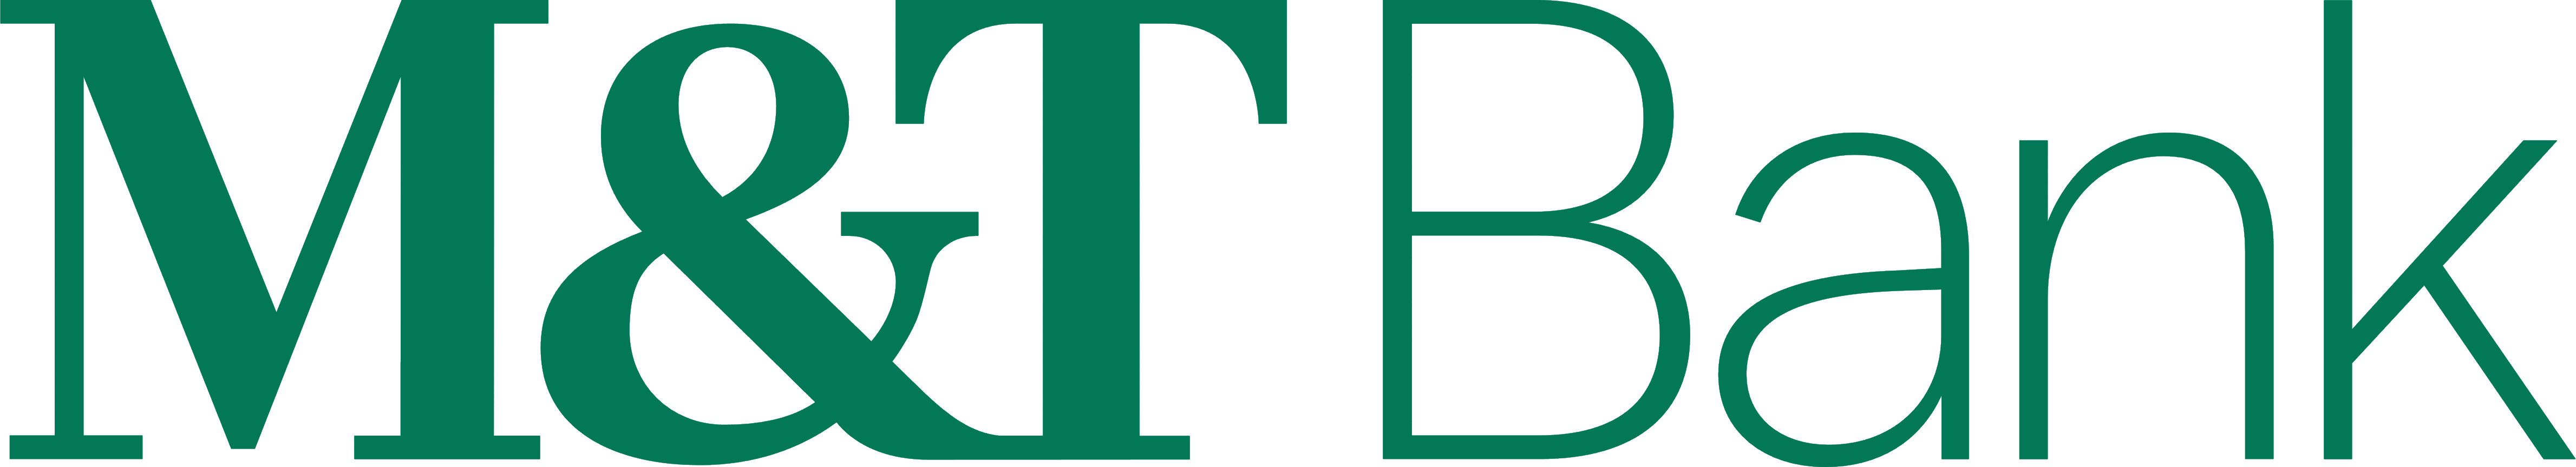 MT_Bank_logo_logotype